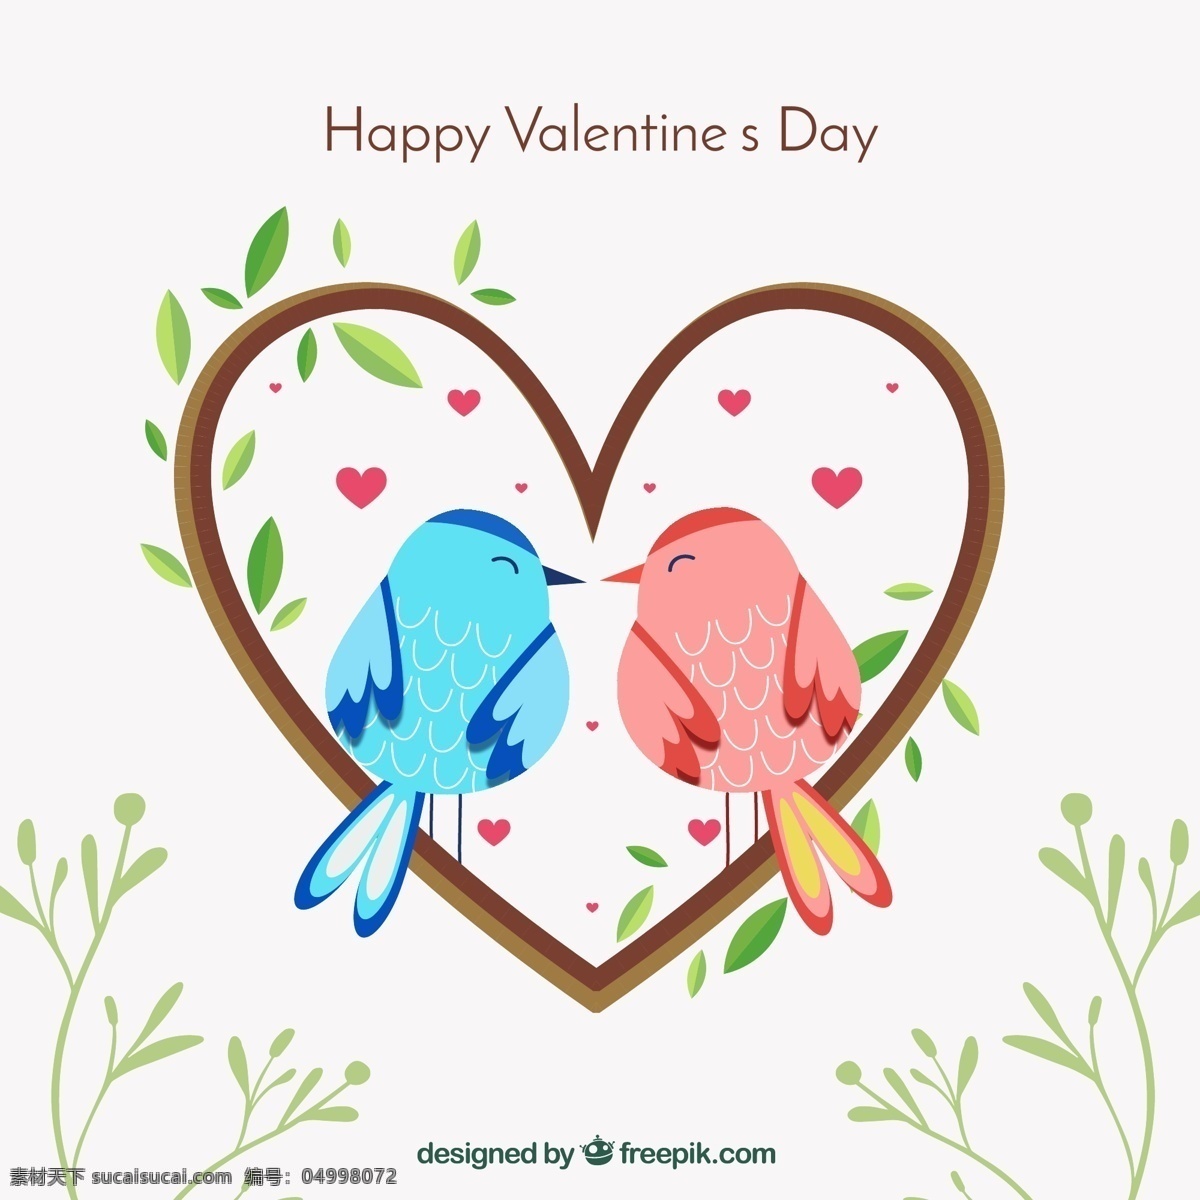 可爱 情人节 爱心 情侣 鸟 矢量图 树叶 happy valentines day 文化艺术 节日庆祝